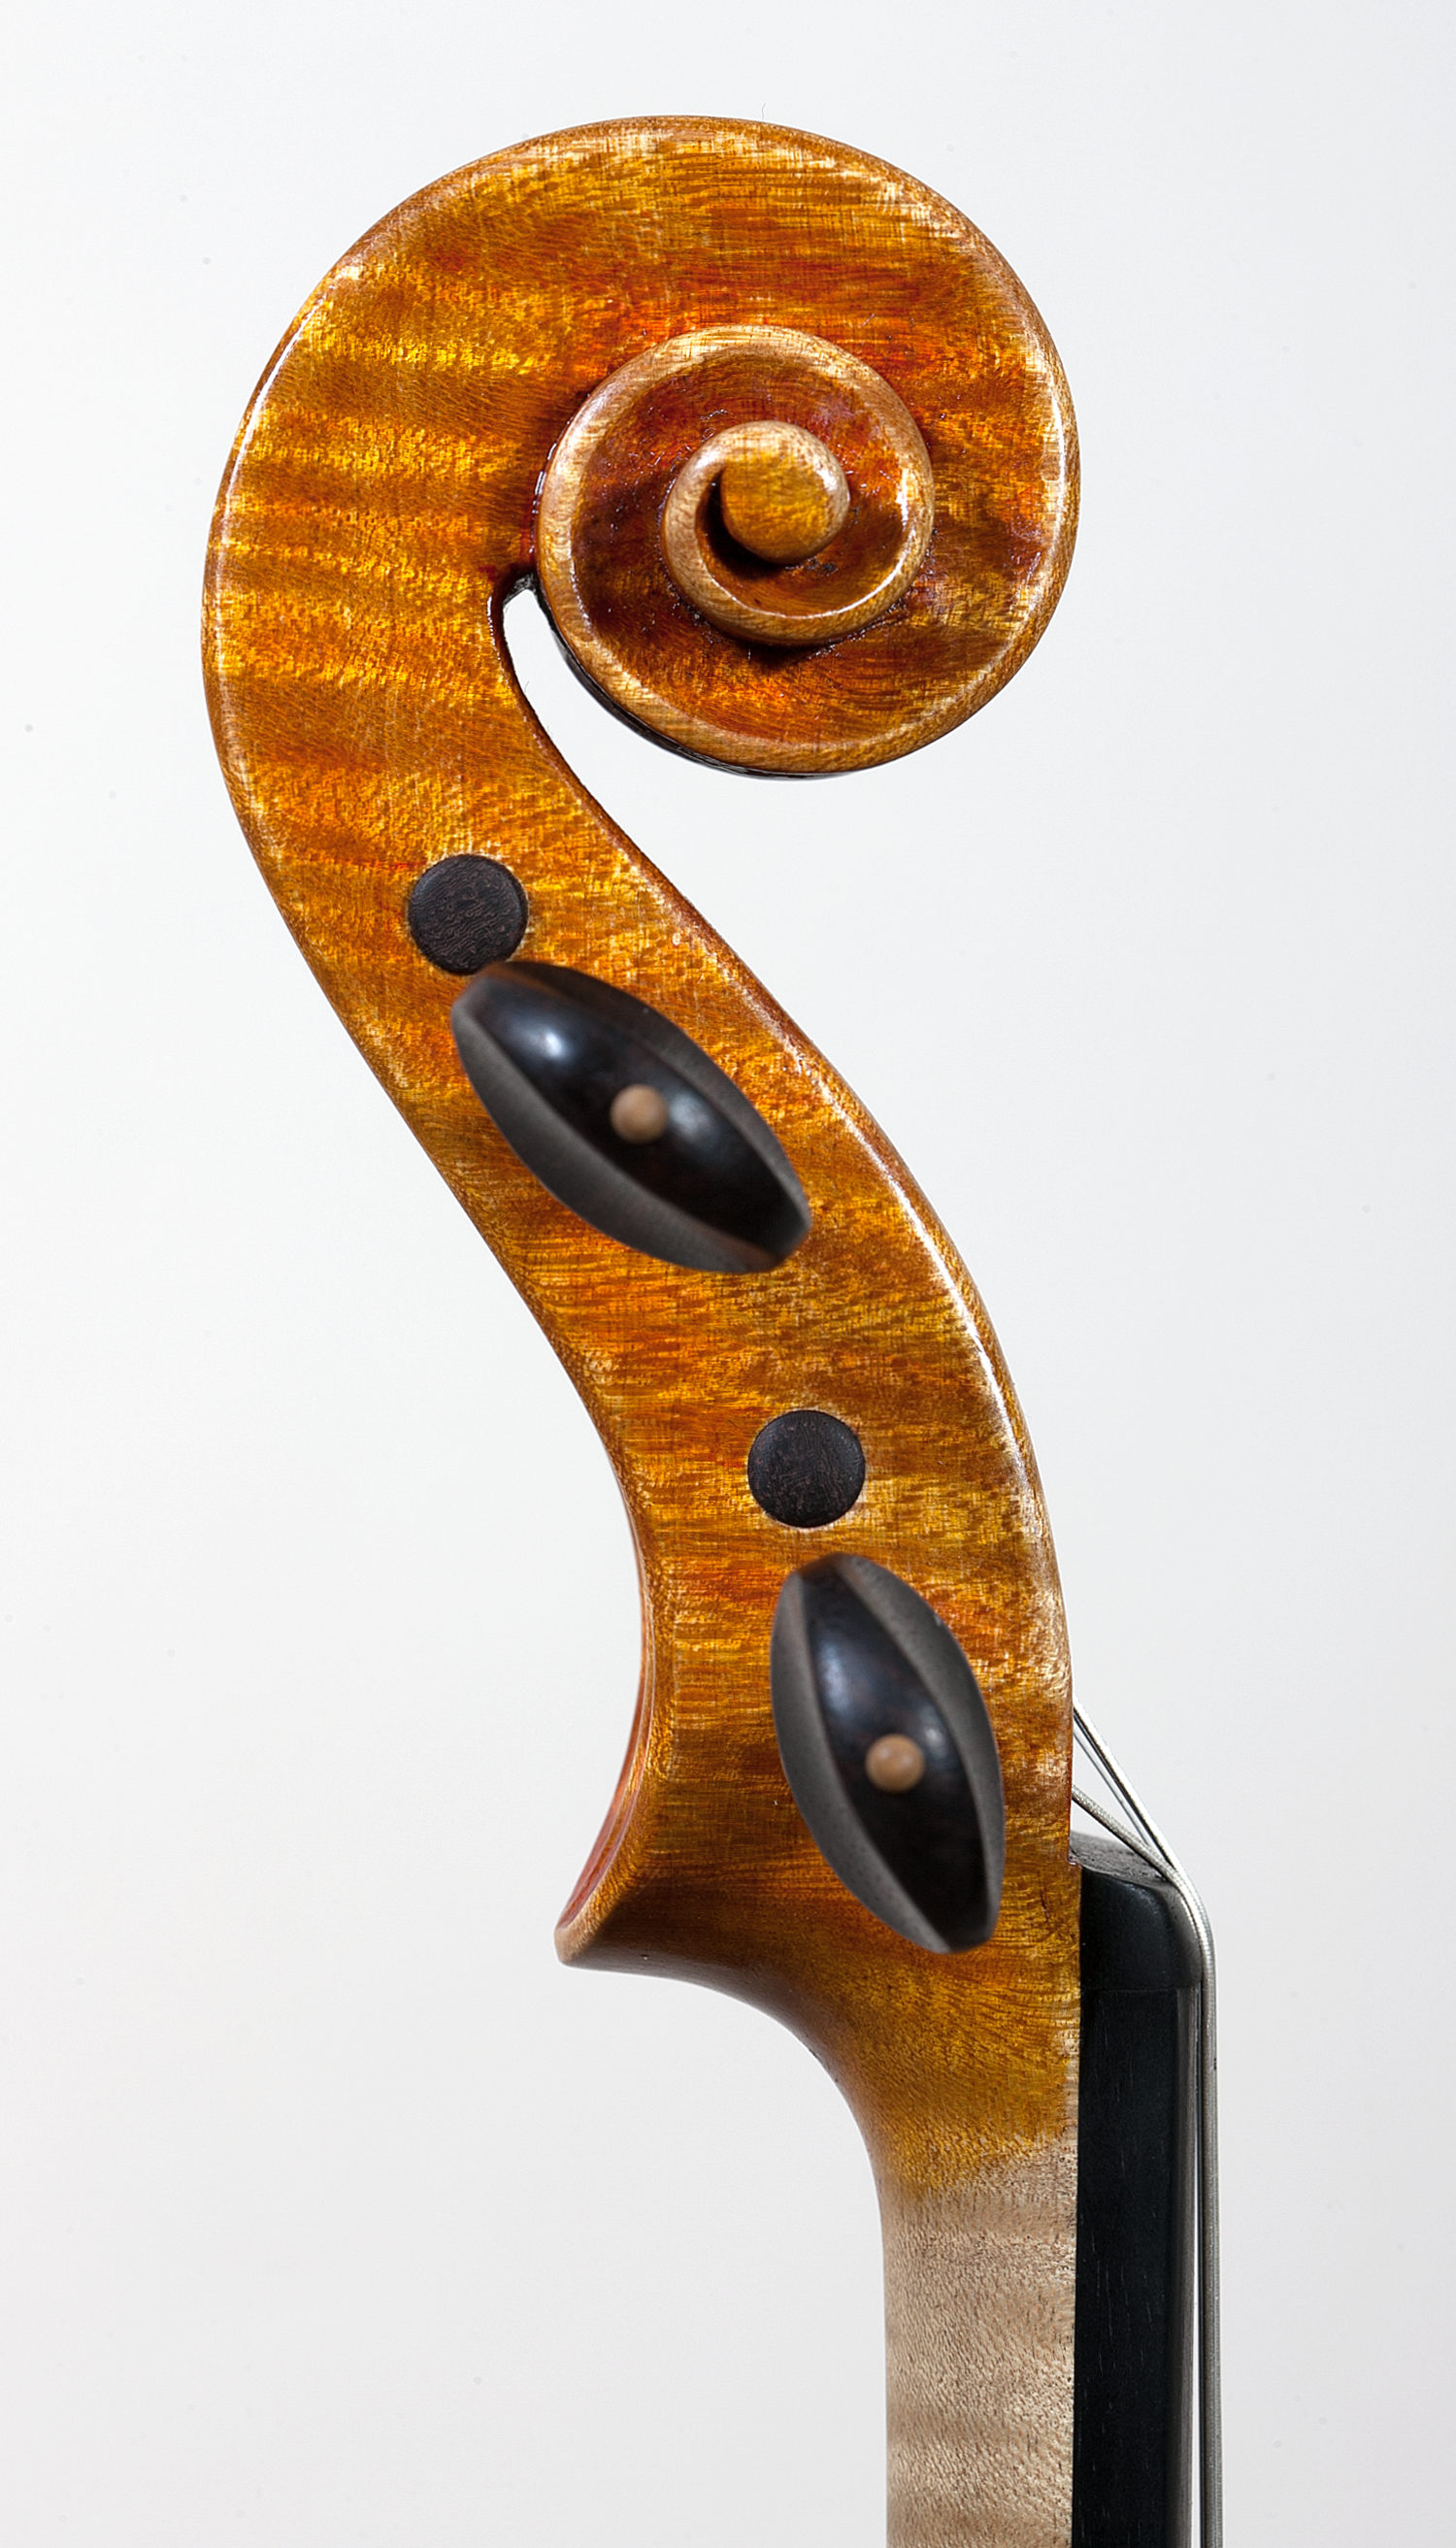 Violino modello Guadagnini, anno 2014